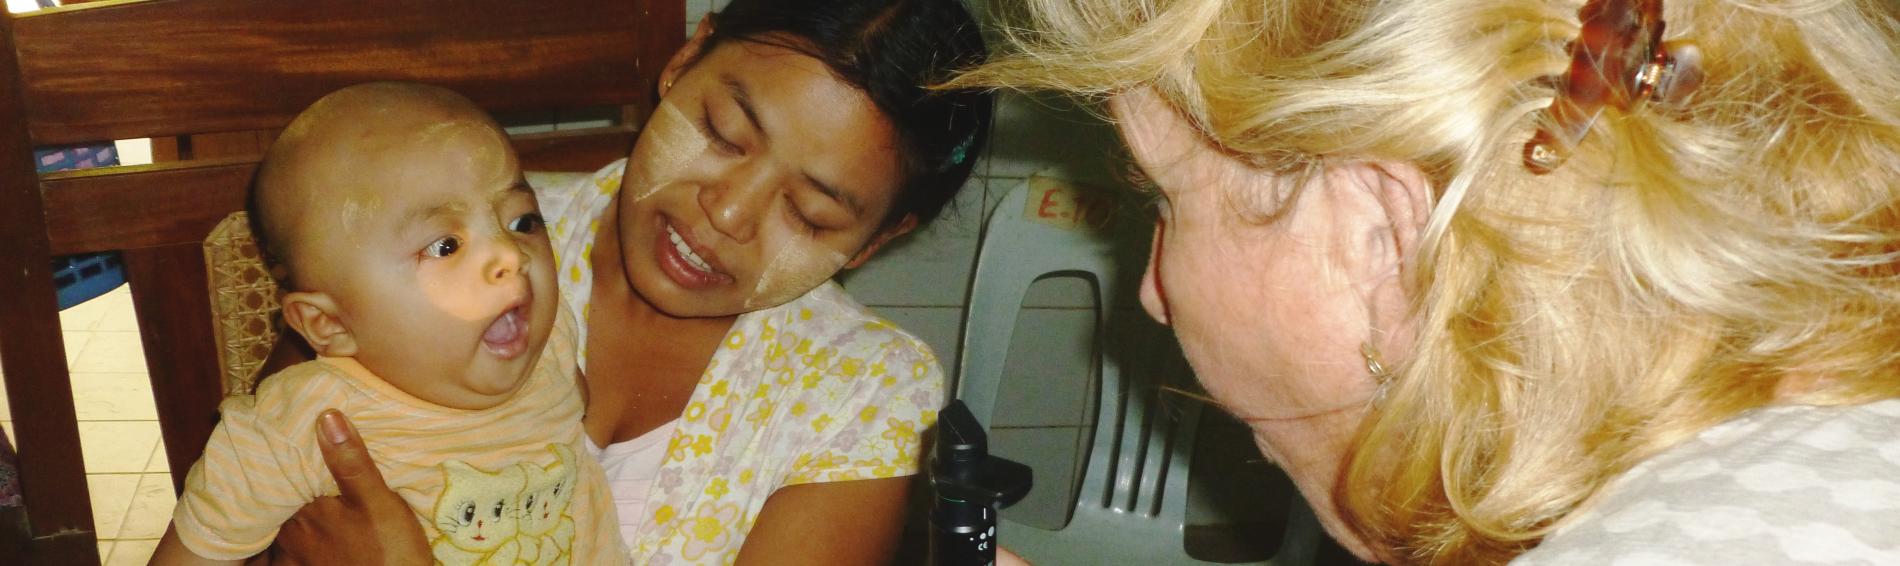 Prof. Klauss untersucht einen kleinen Patienten in Myanmar. Foto: Ärzte der Welt